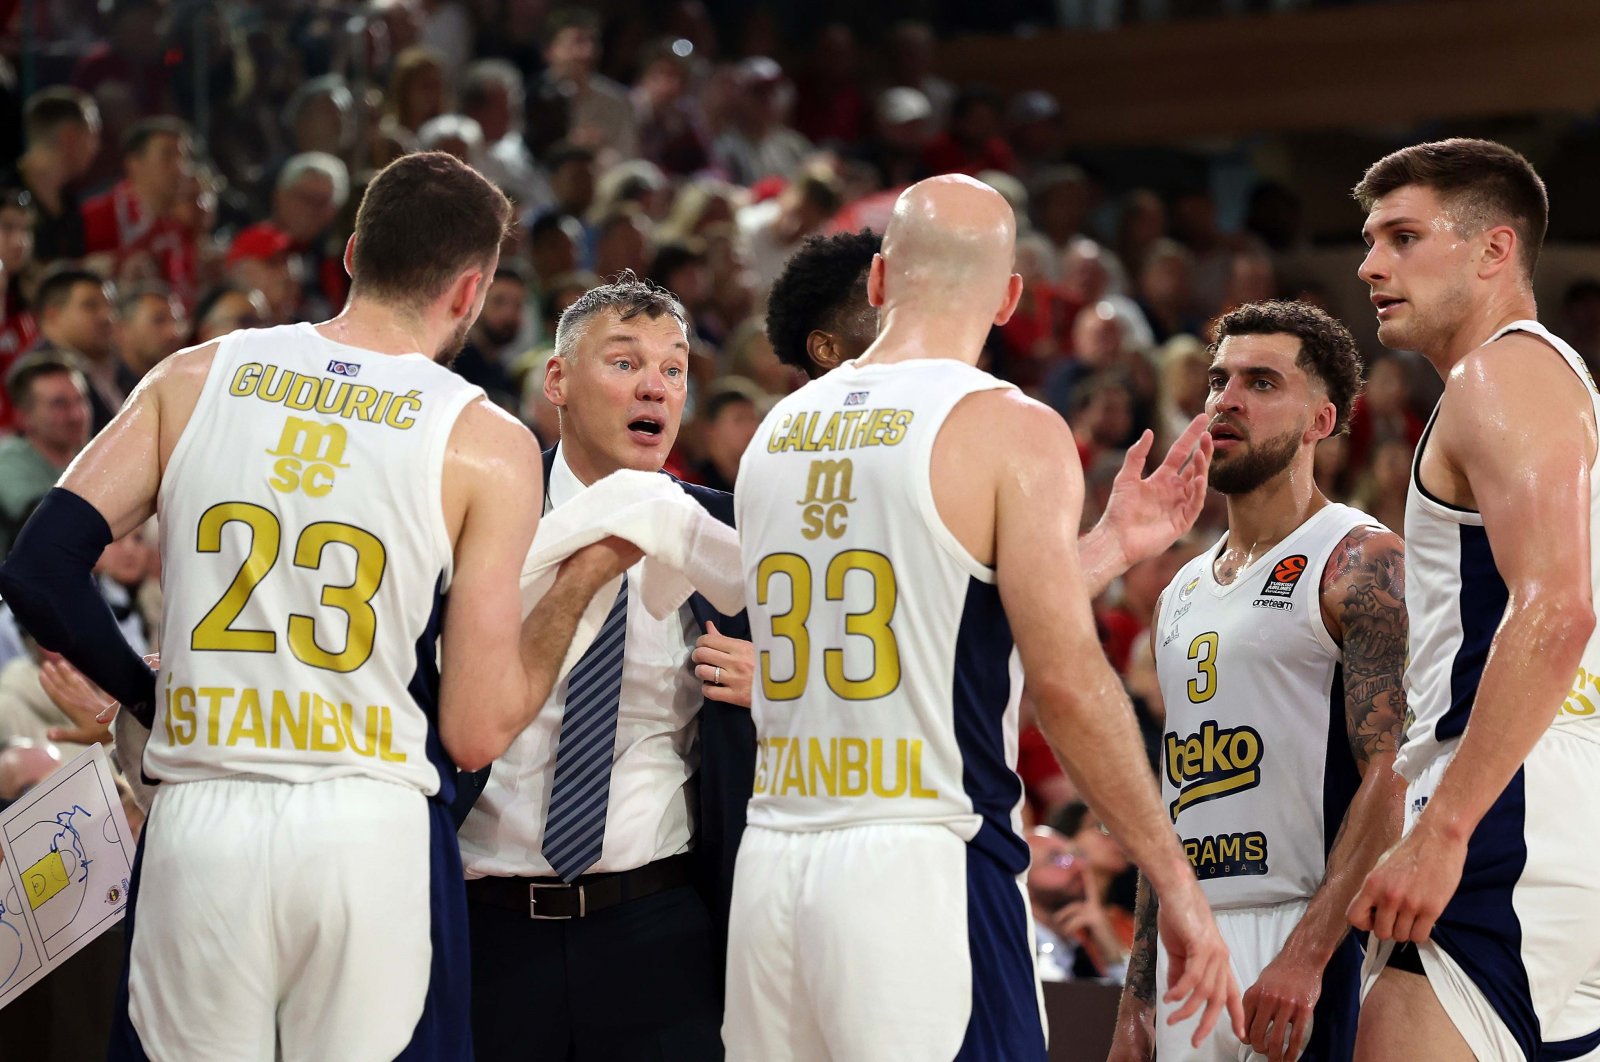 Fenerbahçe, EuroLeague giants gear up to leave it all on Berlin court